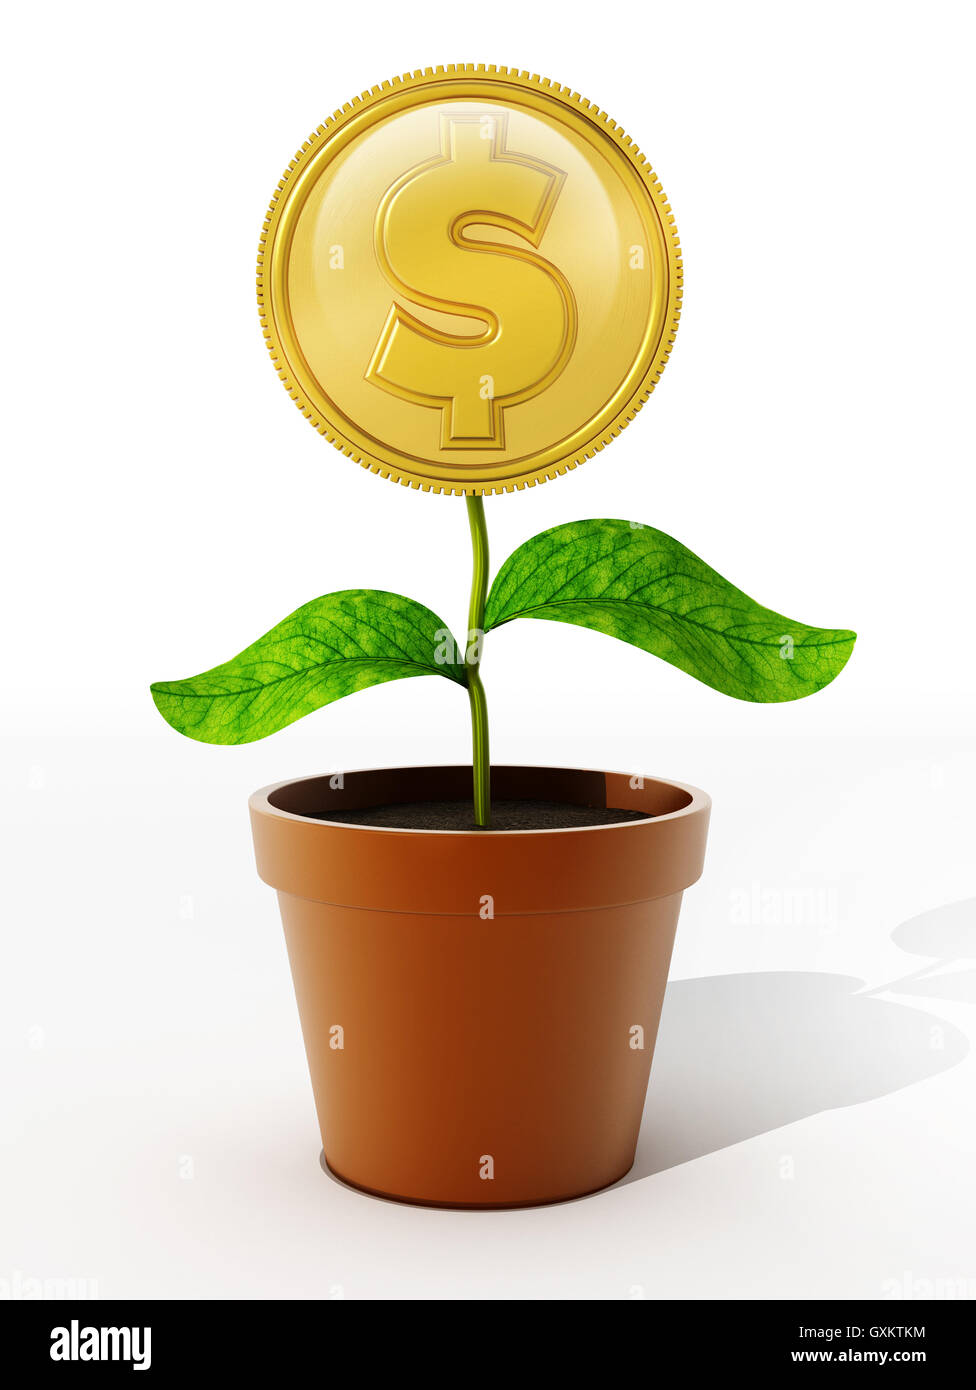 Pièce d'or avec le symbole du dollar sur le pot de fleurs. 3D illustration. Banque D'Images